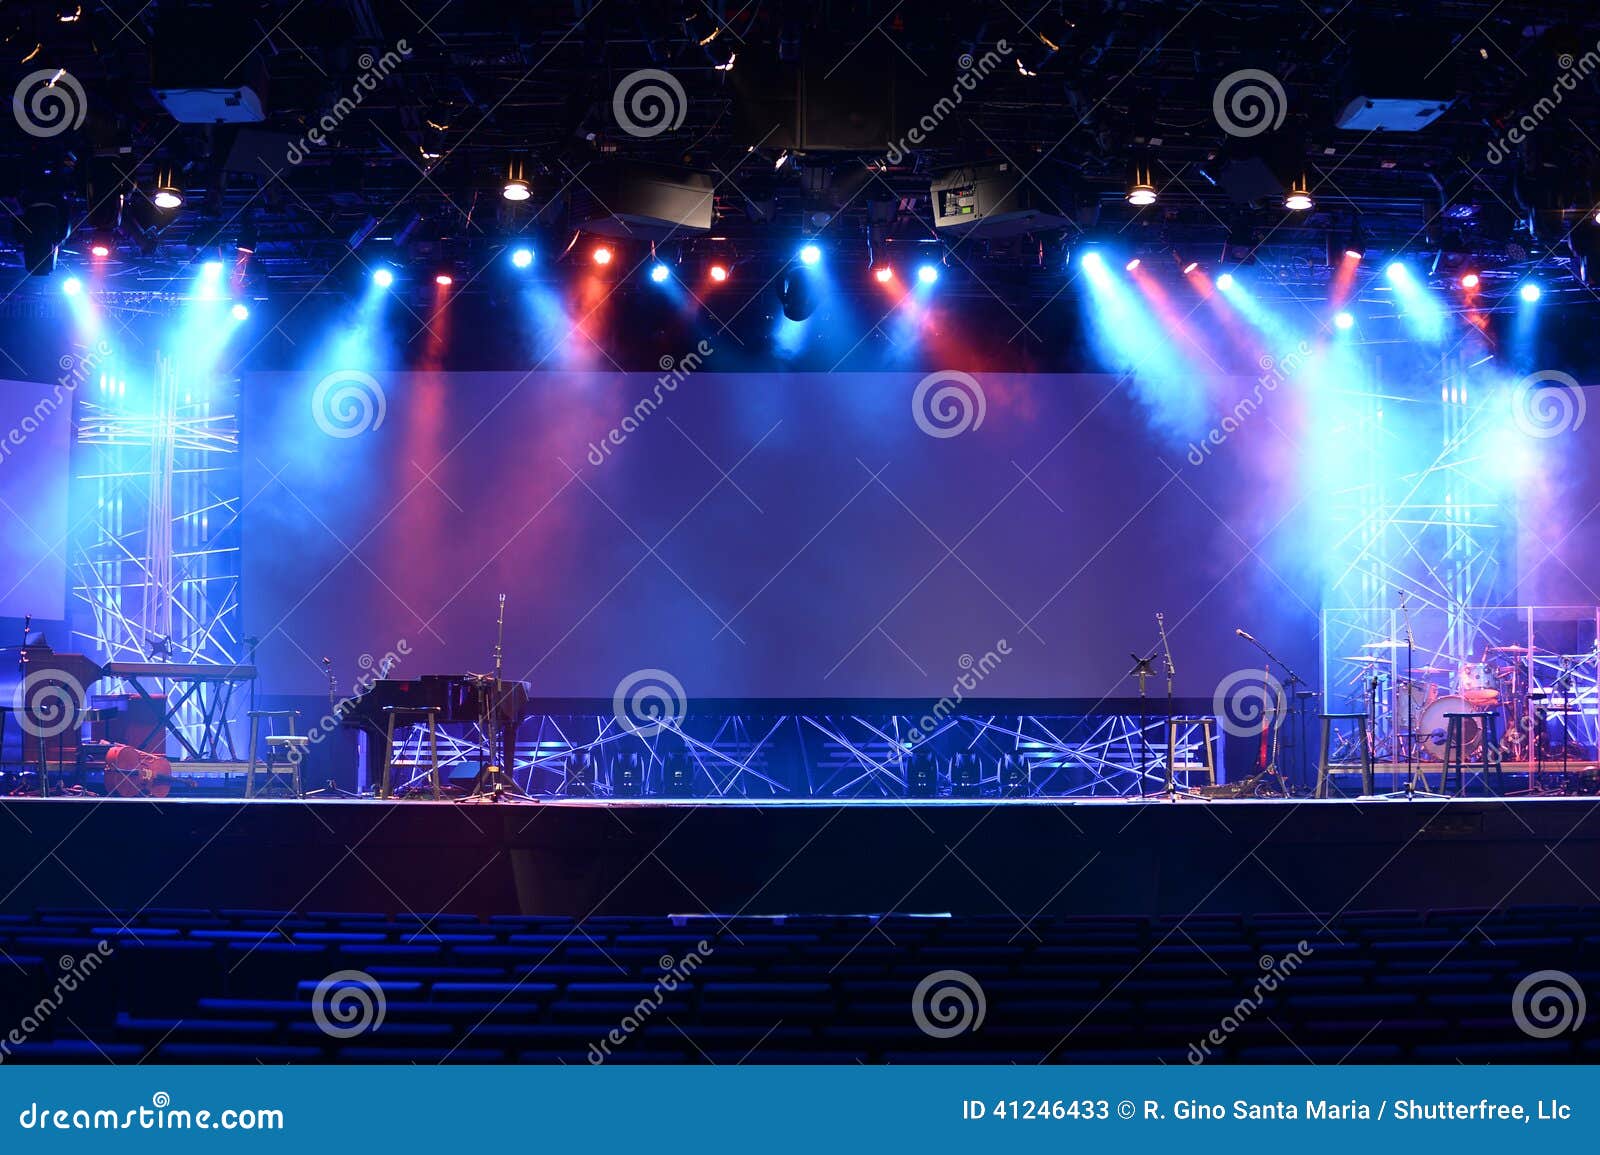 rock concert stage design